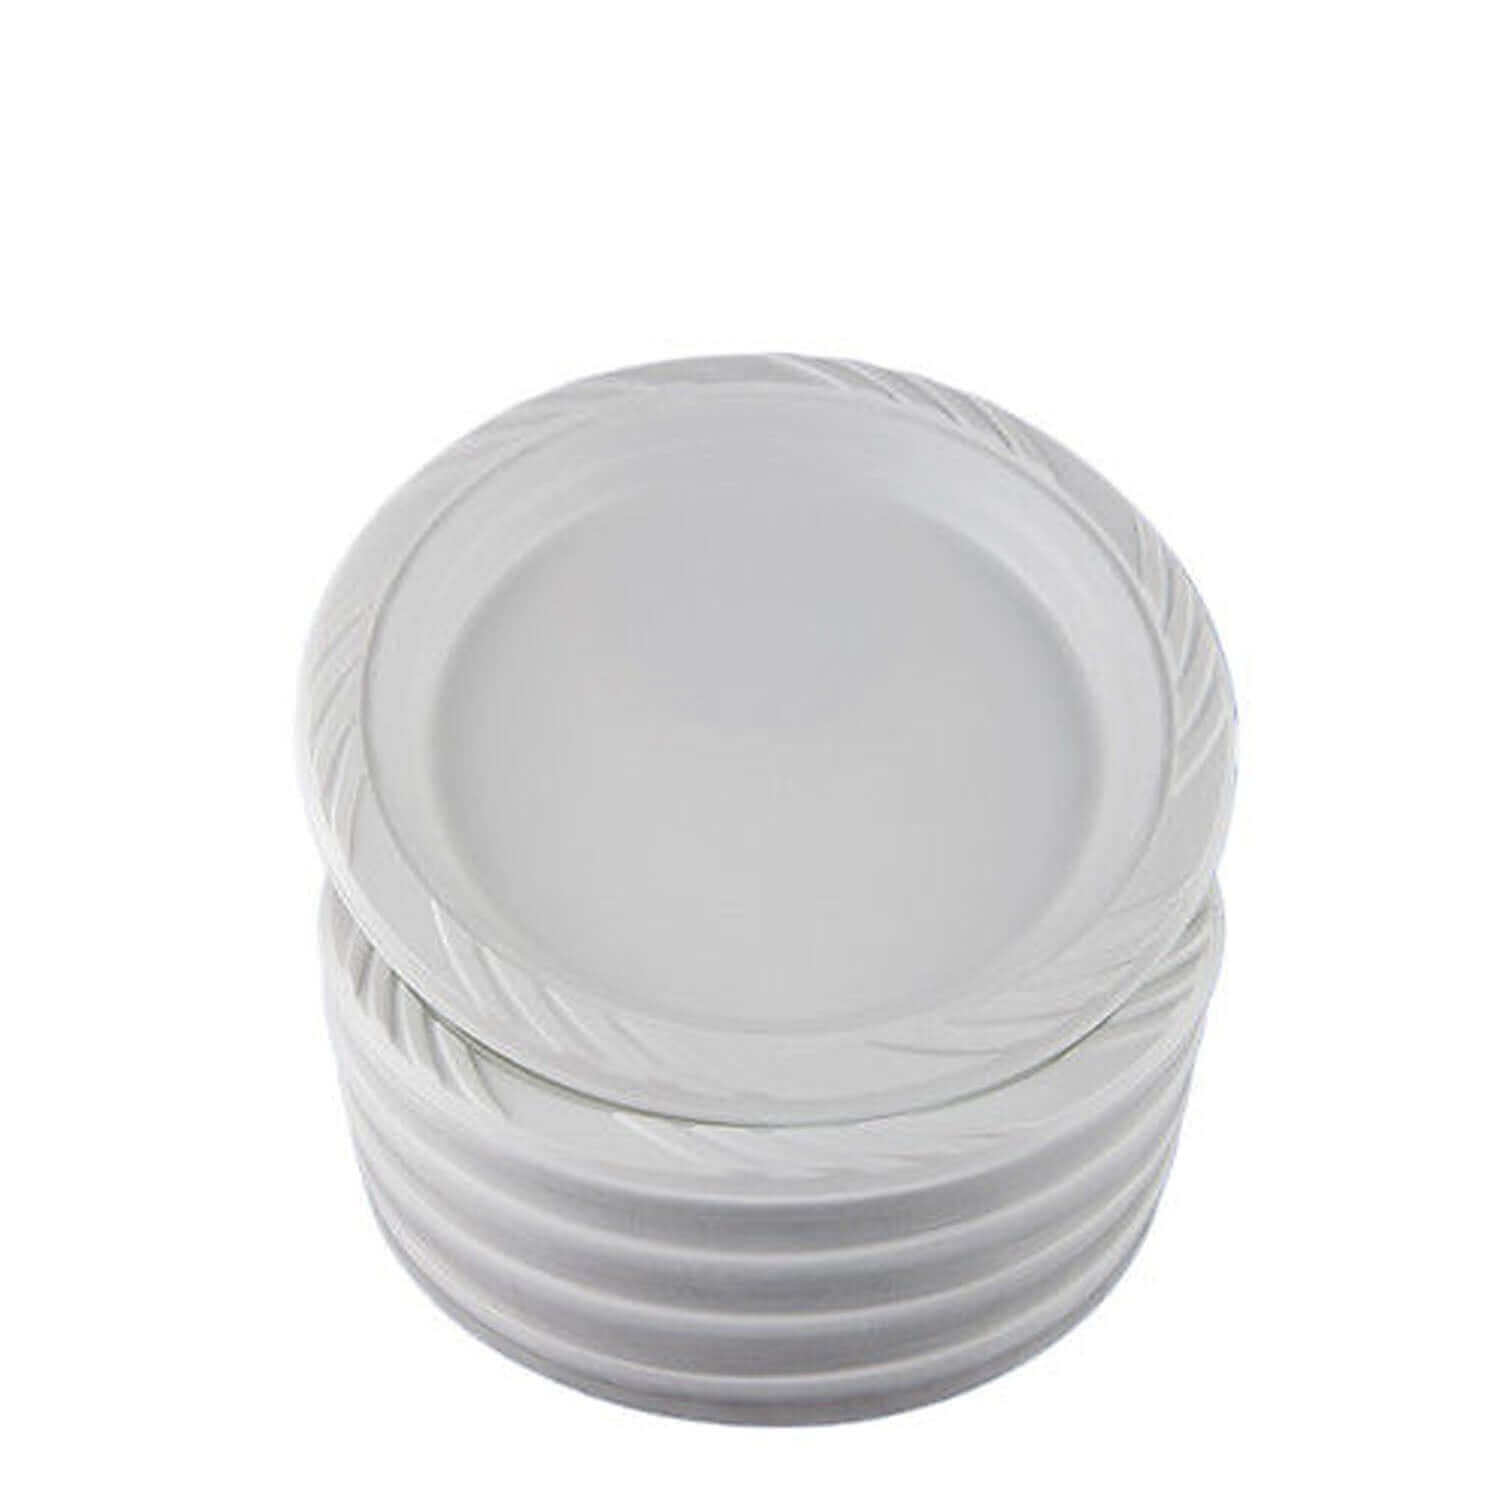 7" White Plastic Plates | 800 Count - Yom Tov Settings